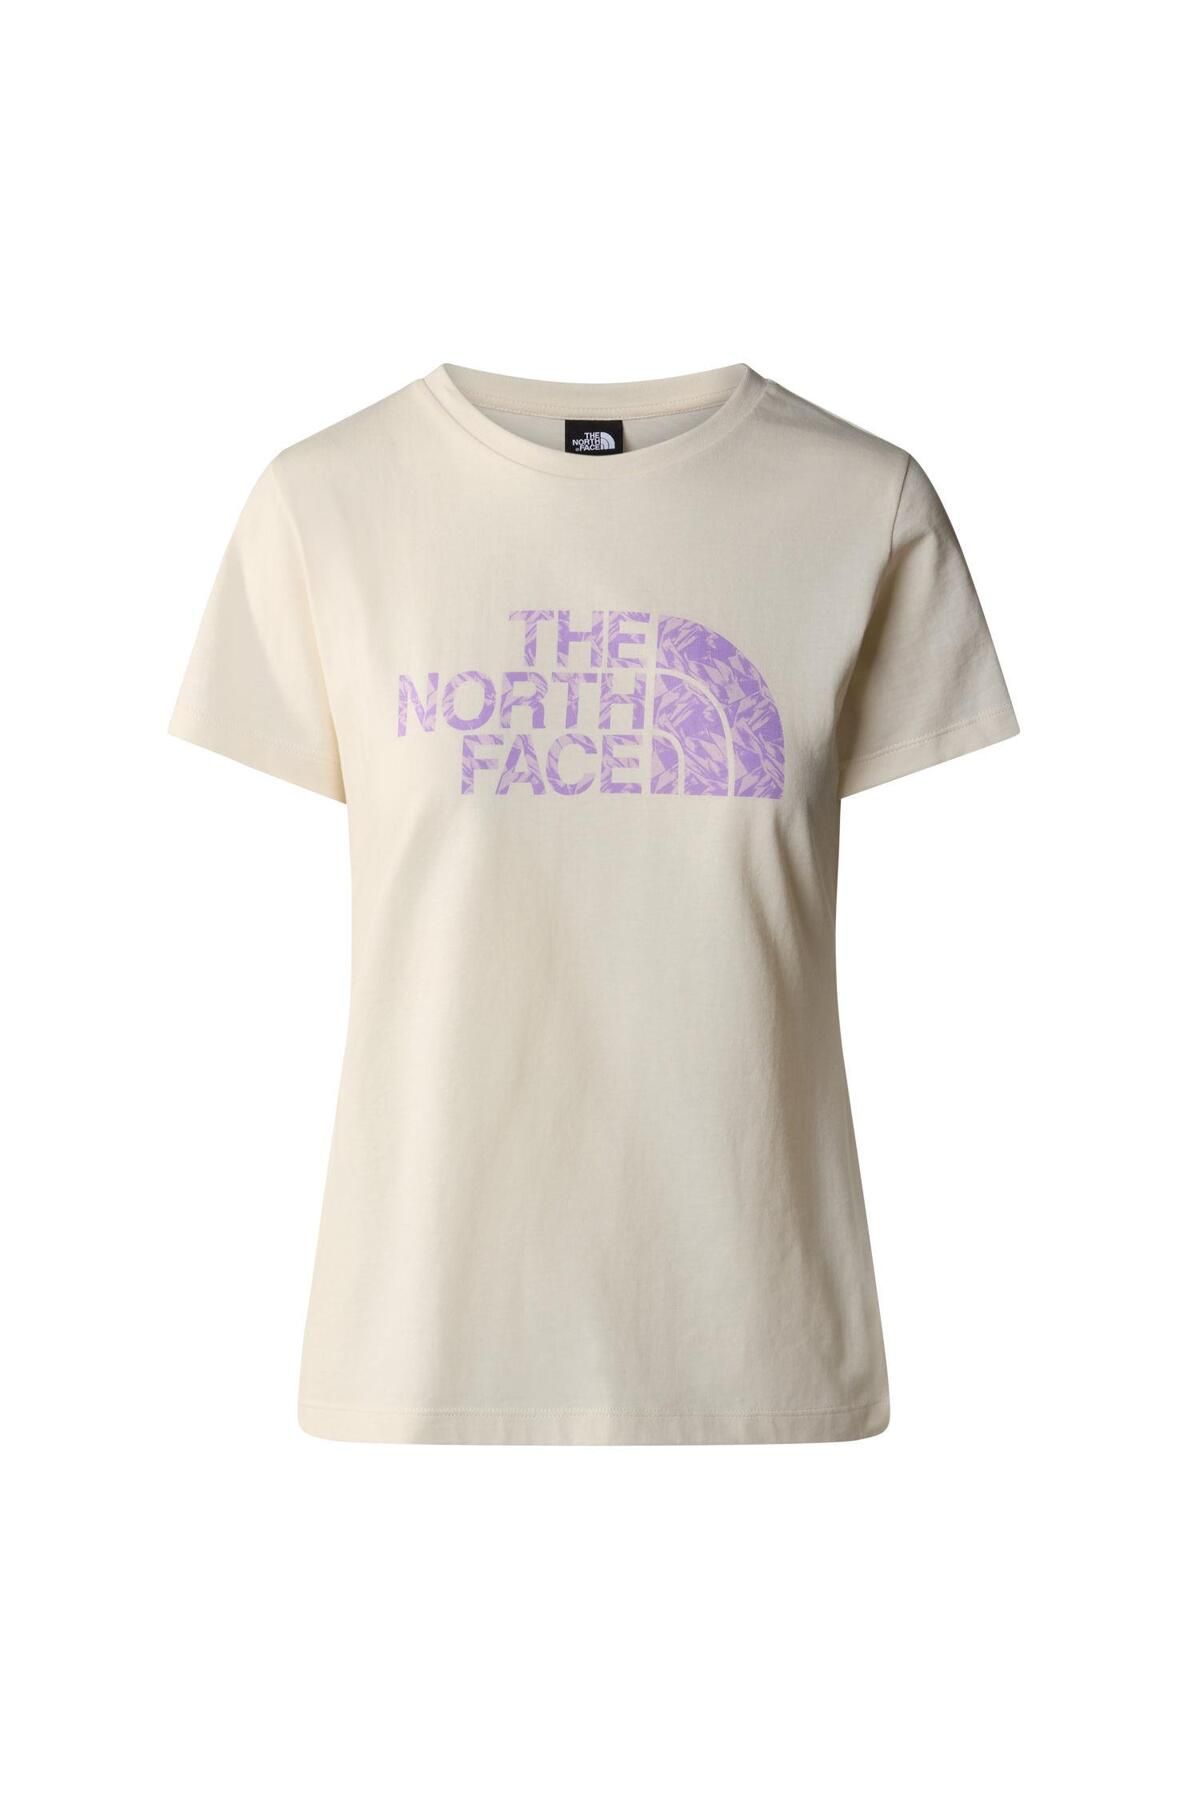 The North Face W S/s Easy Tee Kadın T-shirt Nf0a87n6yfo1 Beyaz-l